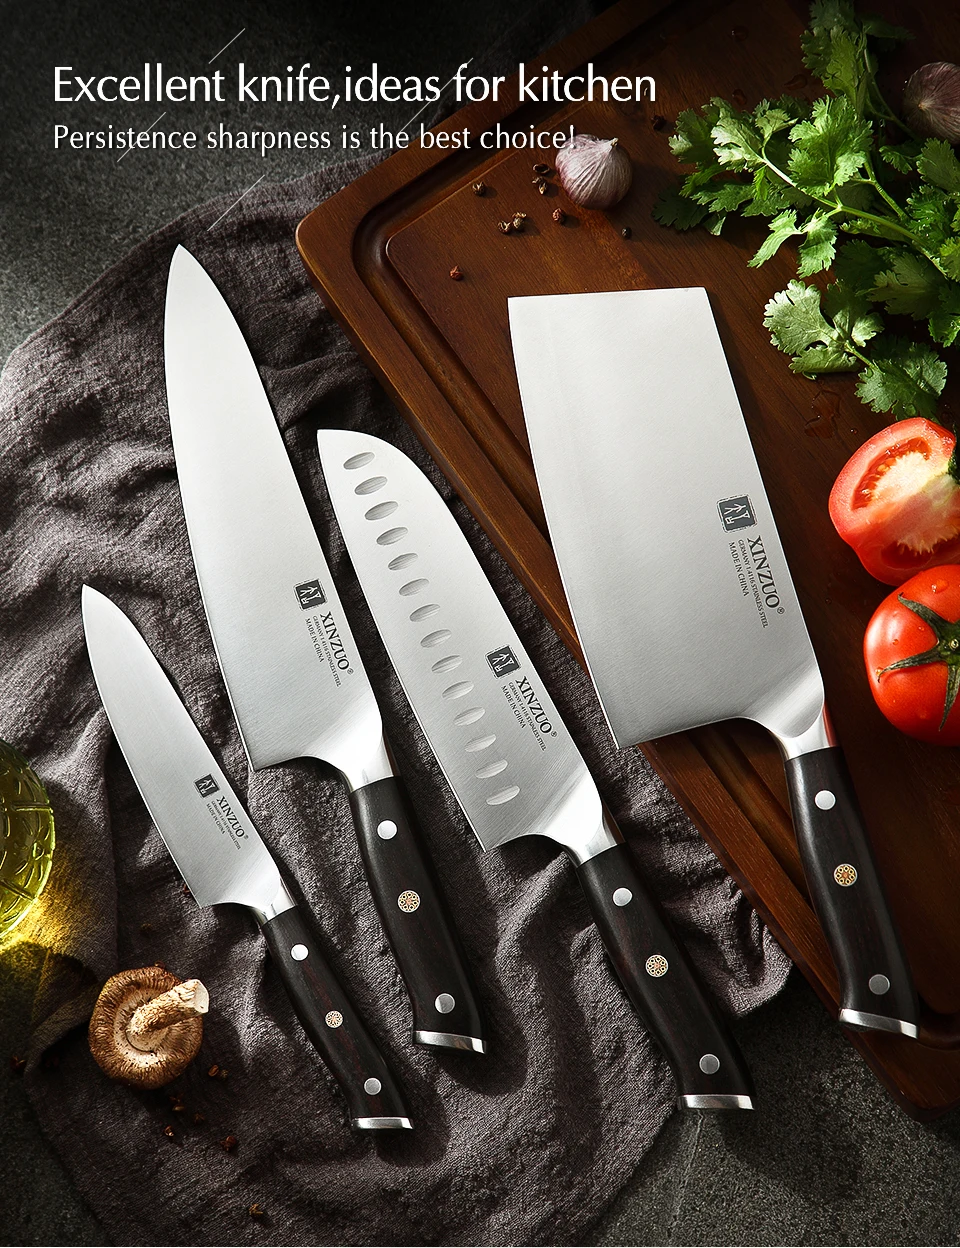 XINZUO 4 шт Секач шеф-повара Santoku набор ножей из высокоуглеродистой нержавеющей стали Din 1,4116 новые кухонные ножи с черной ручкой